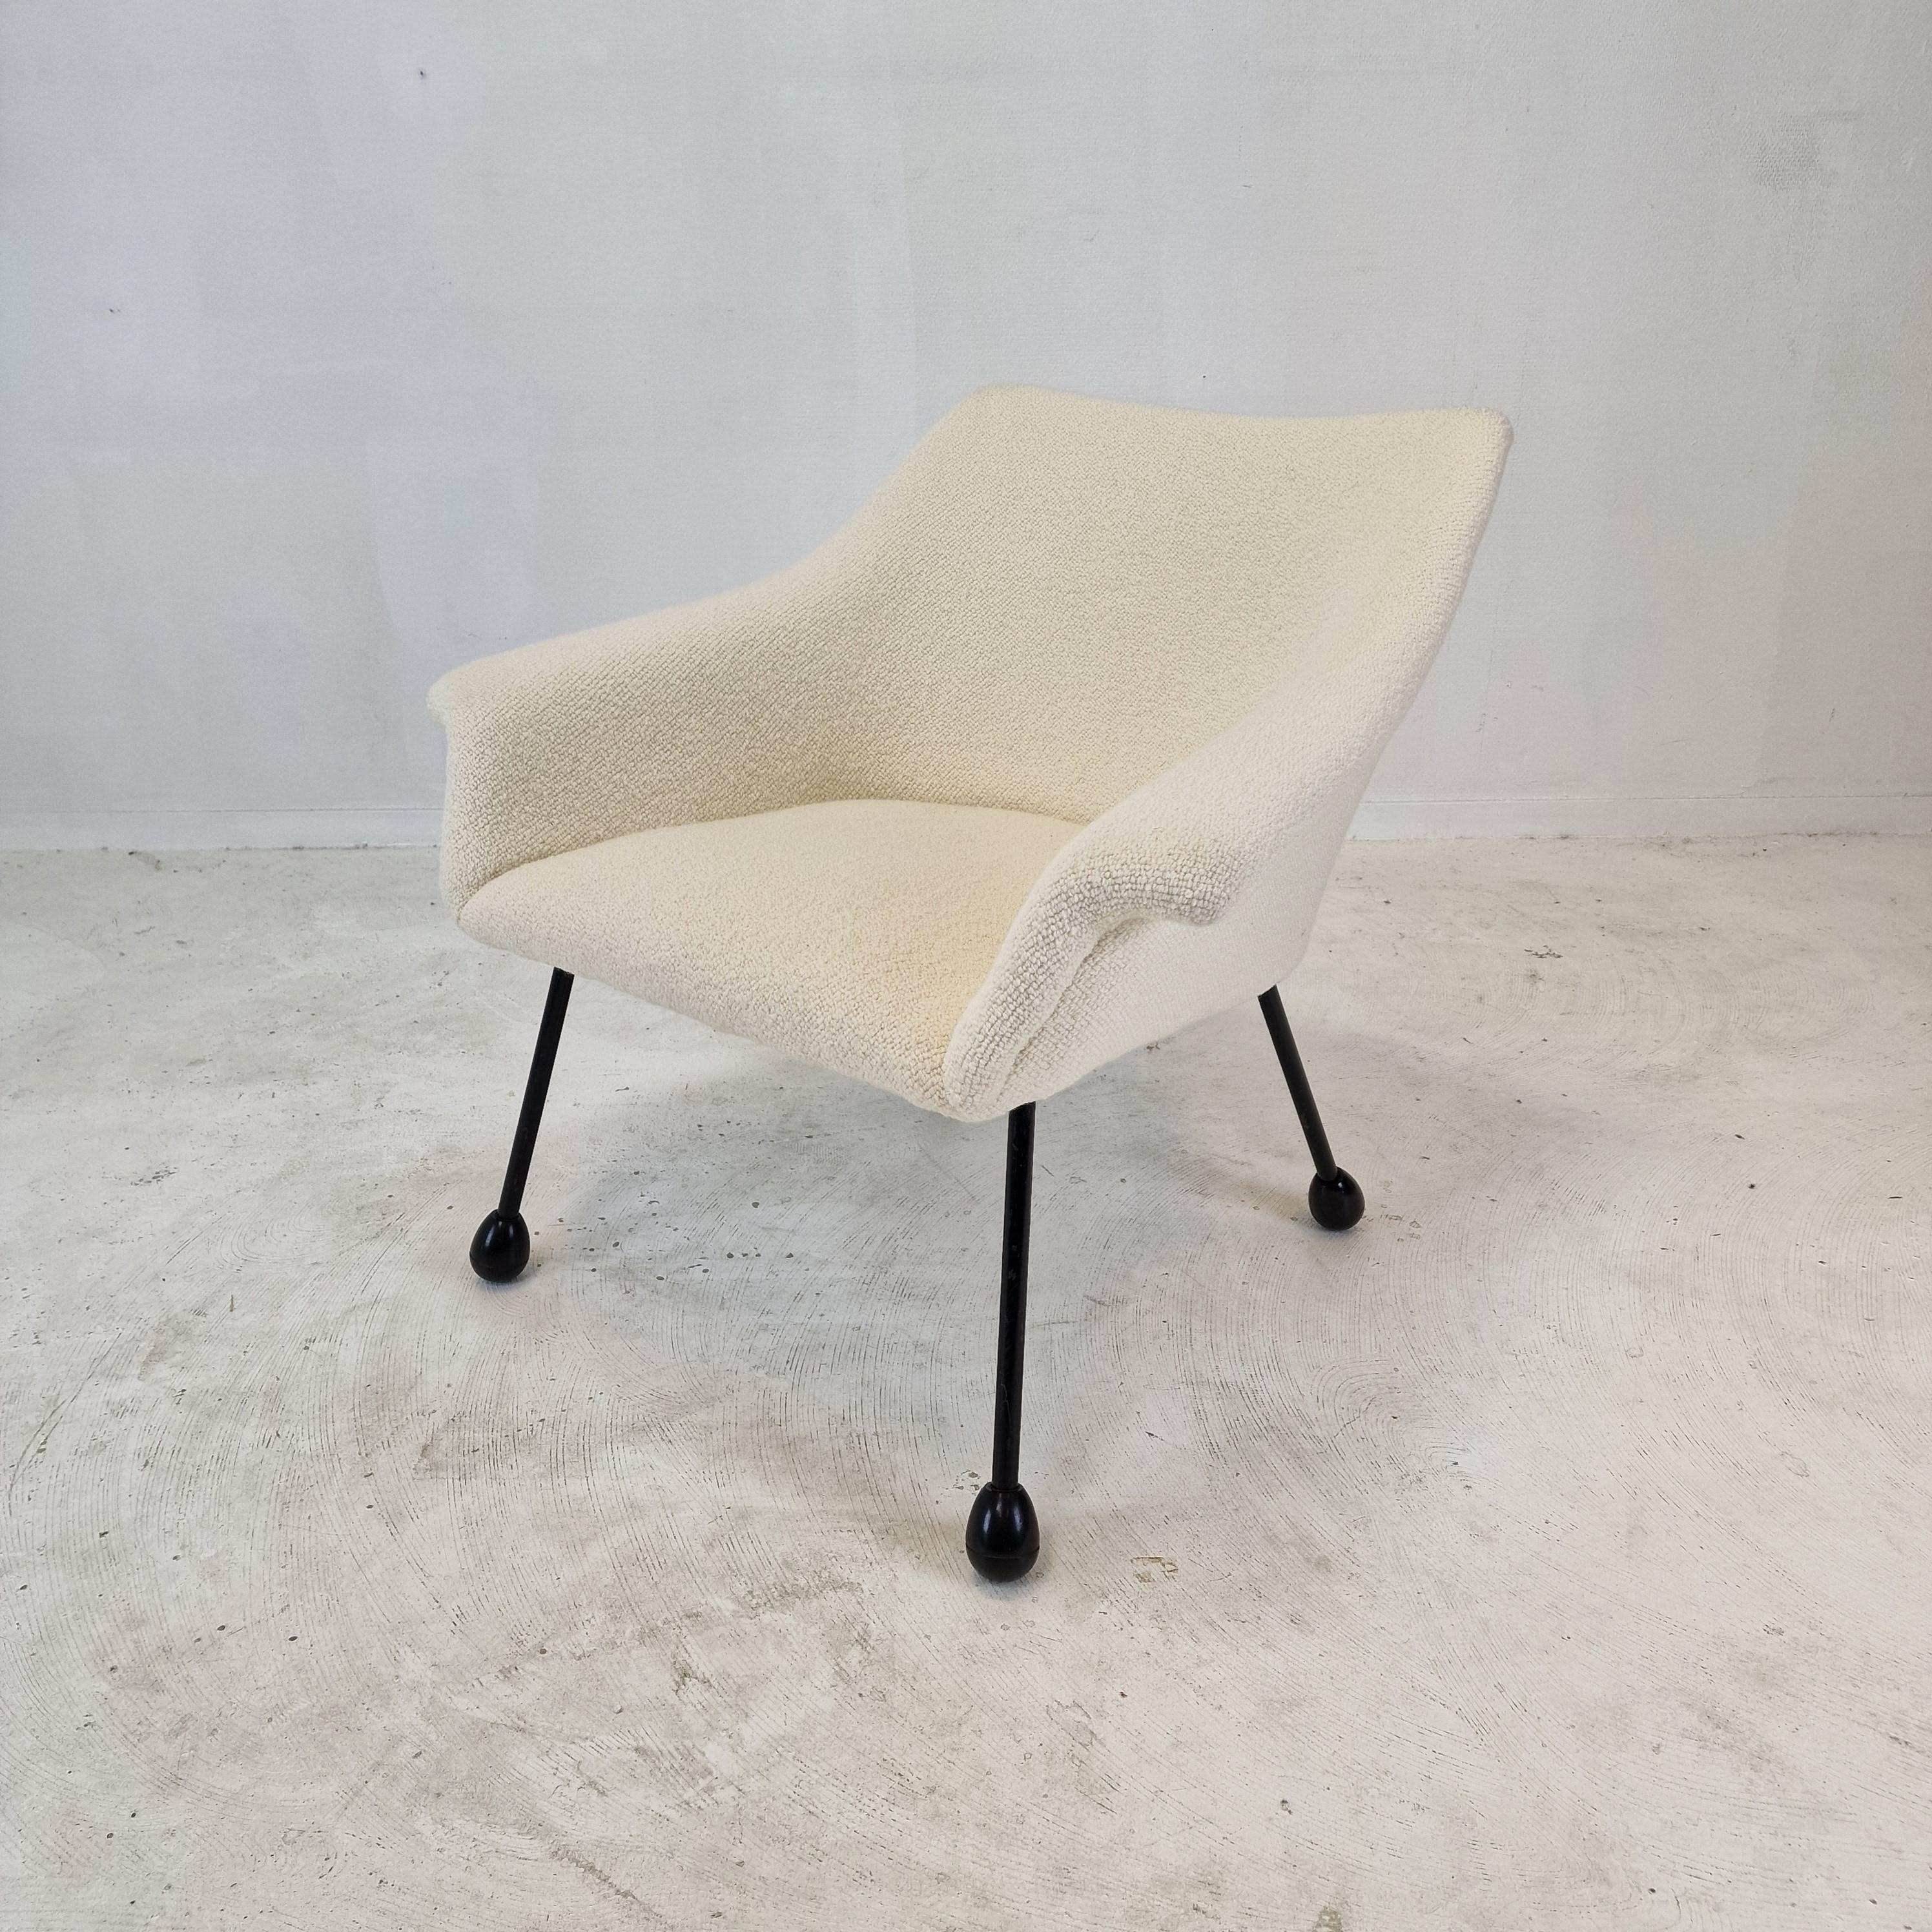 Fauteuil confortable et douillet, fabriqué en Italie dans les années 60. 

Cette jolie chaise est recouverte d'un joli tissu en laine de haute qualité, Pierre Frey Judith.

La chaise est entièrement restaurée avec un nouveau tissu et une nouvelle